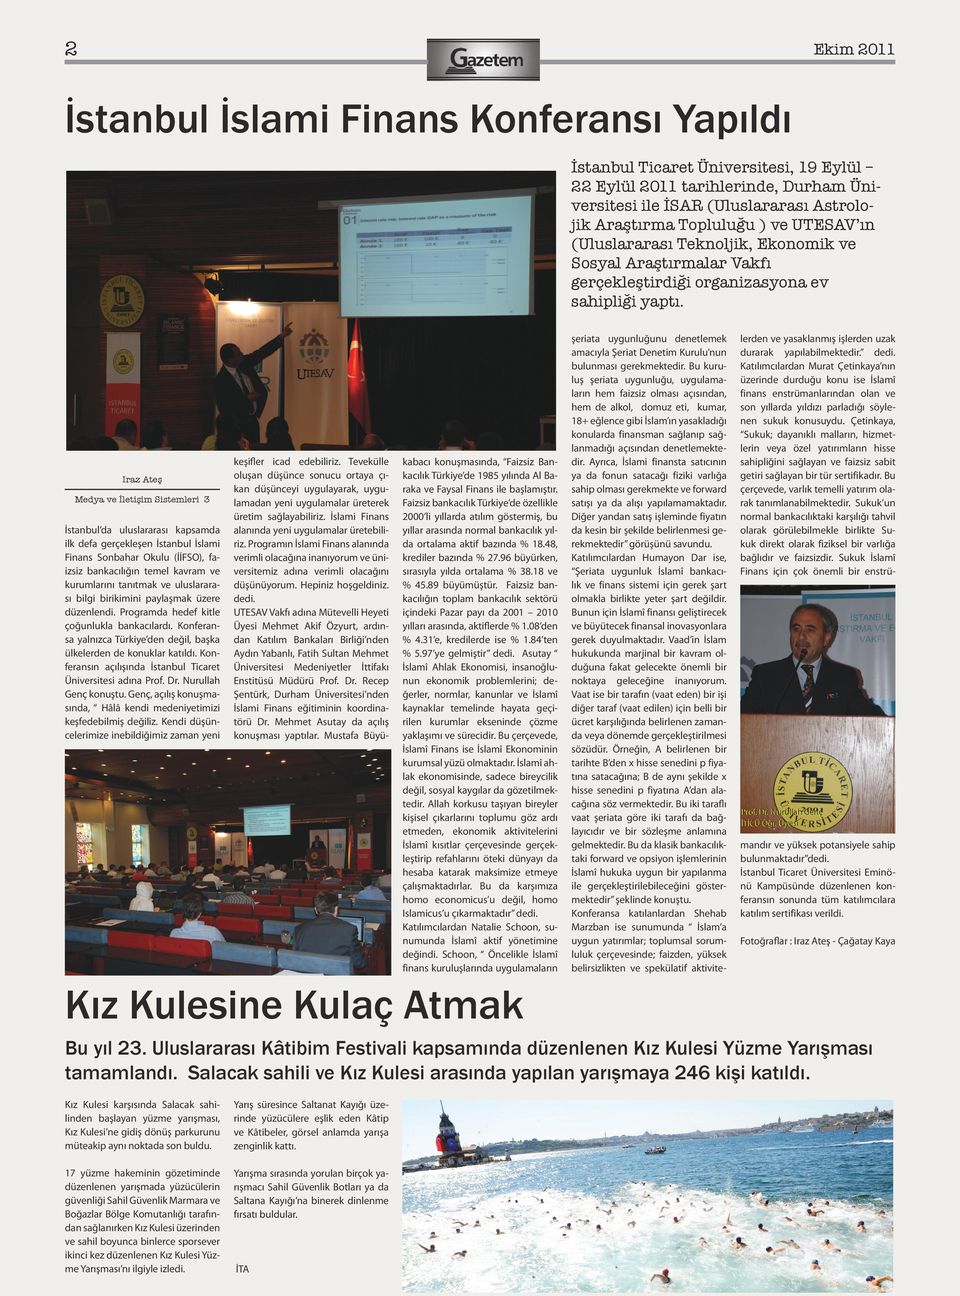 Iraz Ateş Medya ve İletişim Sistemleri 3 İstanbul da uluslararası kapsamda ilk defa gerçekleşen İstanbul İslami Finans Sonbahar Okulu (İİFSO), faizsiz bankacılığın temel kavram ve kurumlarını